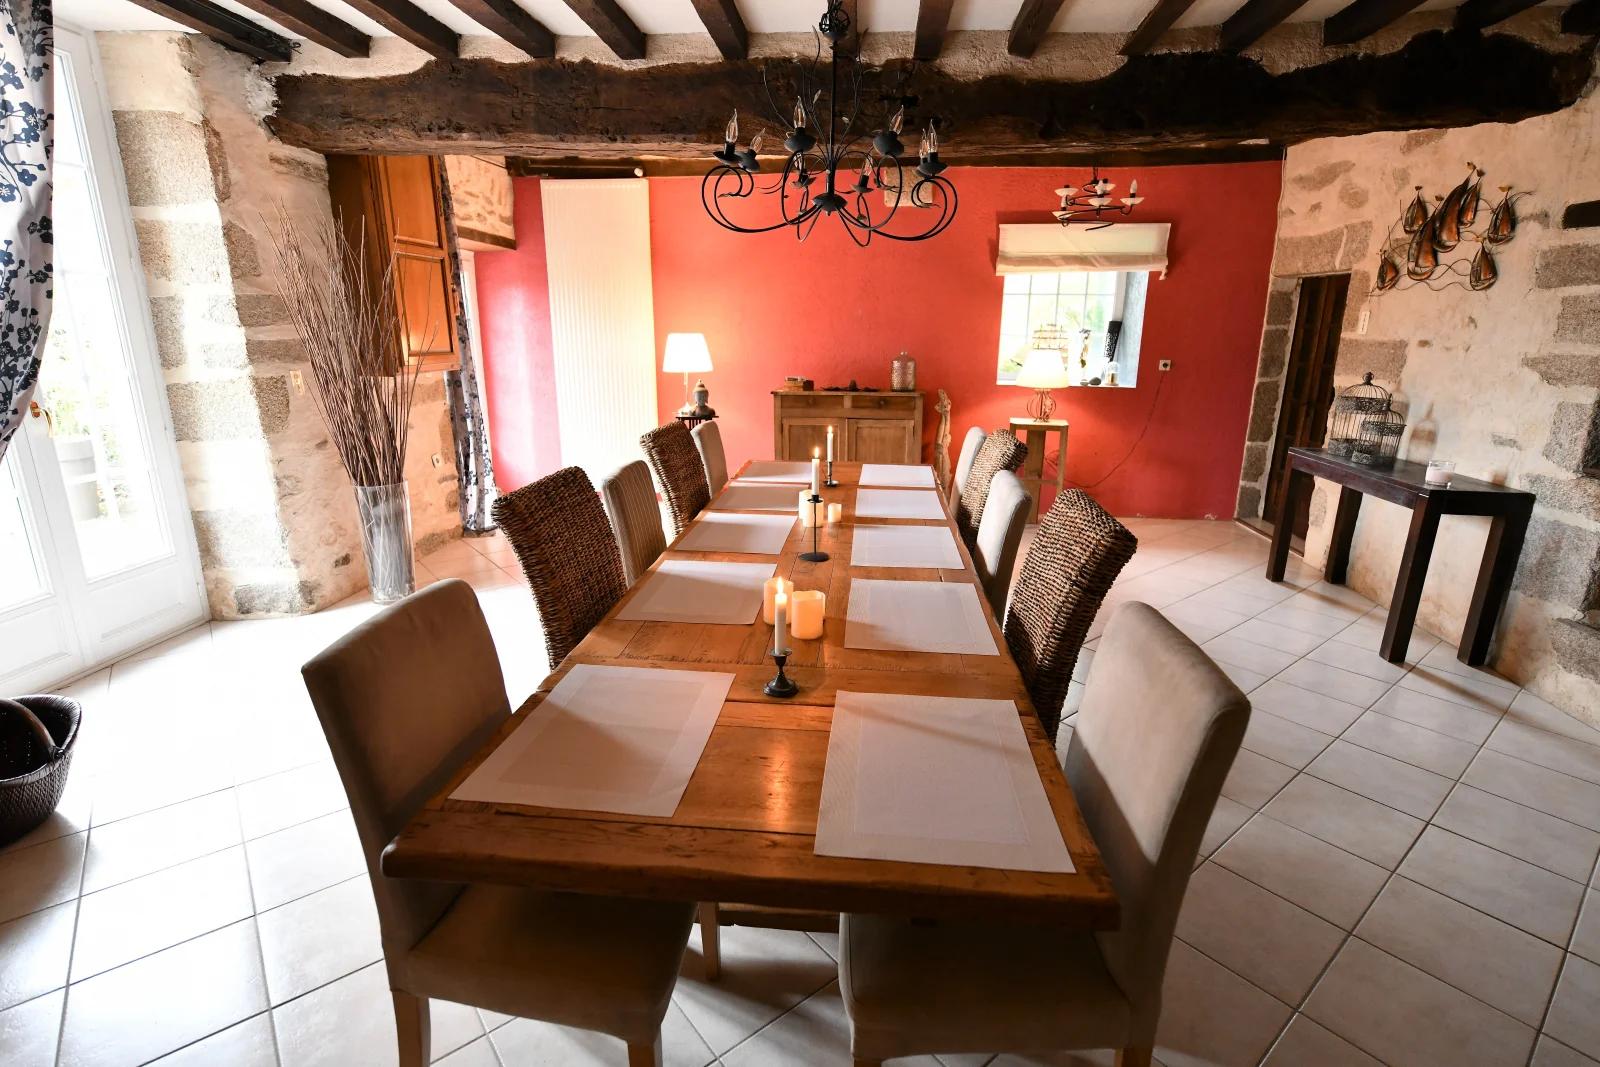 Comedor dentro Recepción/sala de reuniones en un edificio del siglo XVII - 1